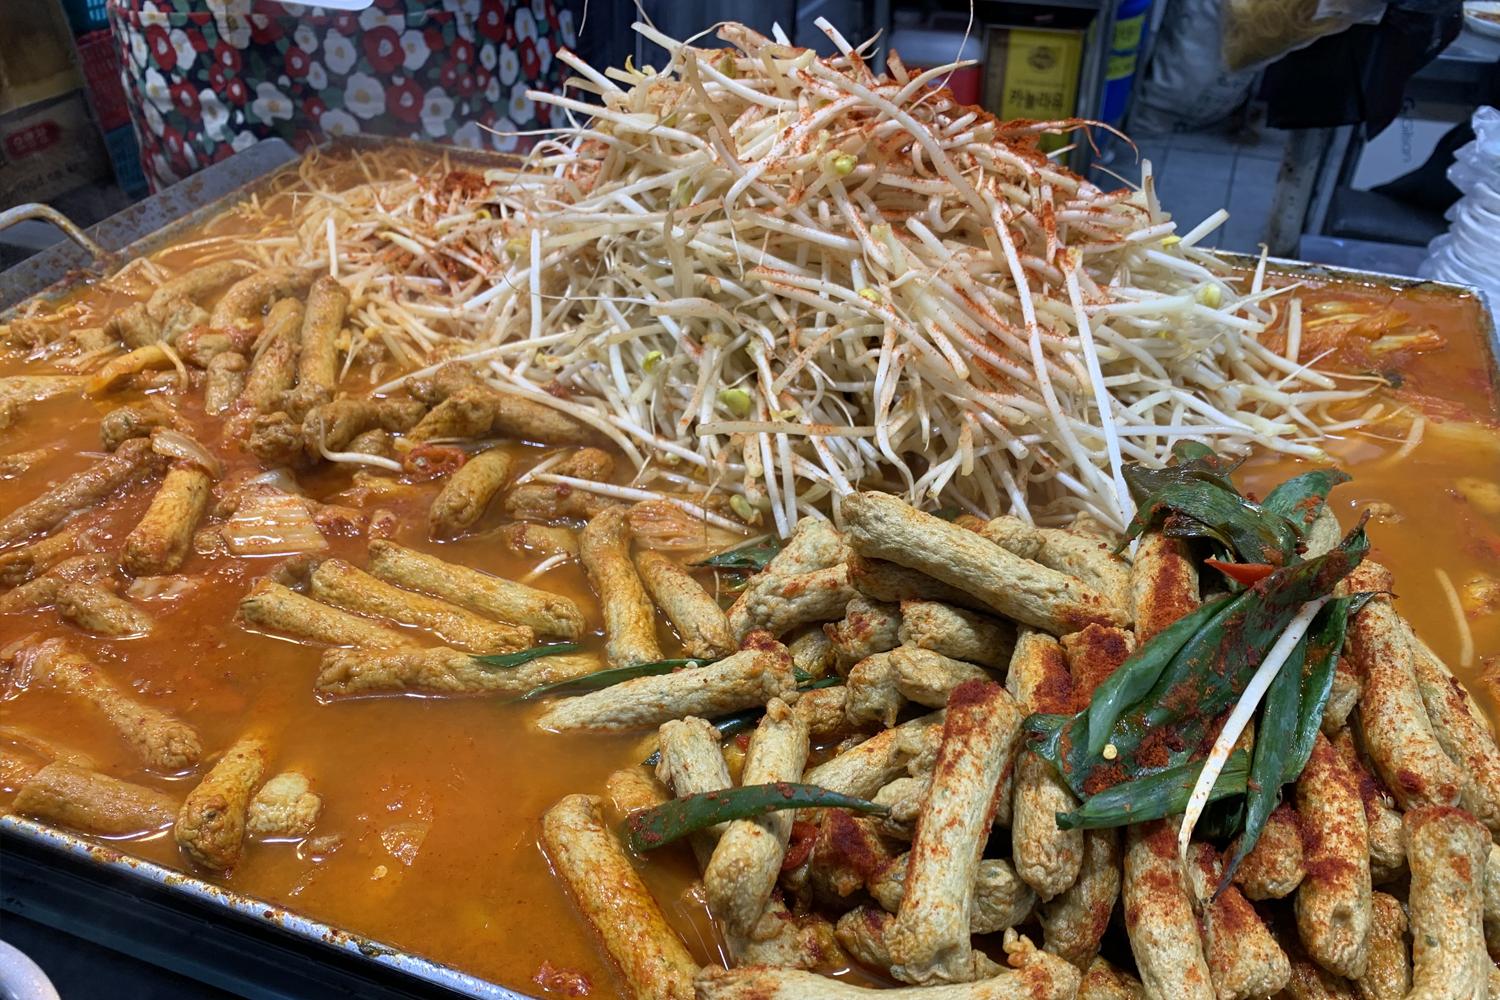 tour daegu dấu vết quê hương v bts chợ truyền thống hàn quốc seomun mandu dẹt 5000 won du lịch văn hóa odeng chả cá giá